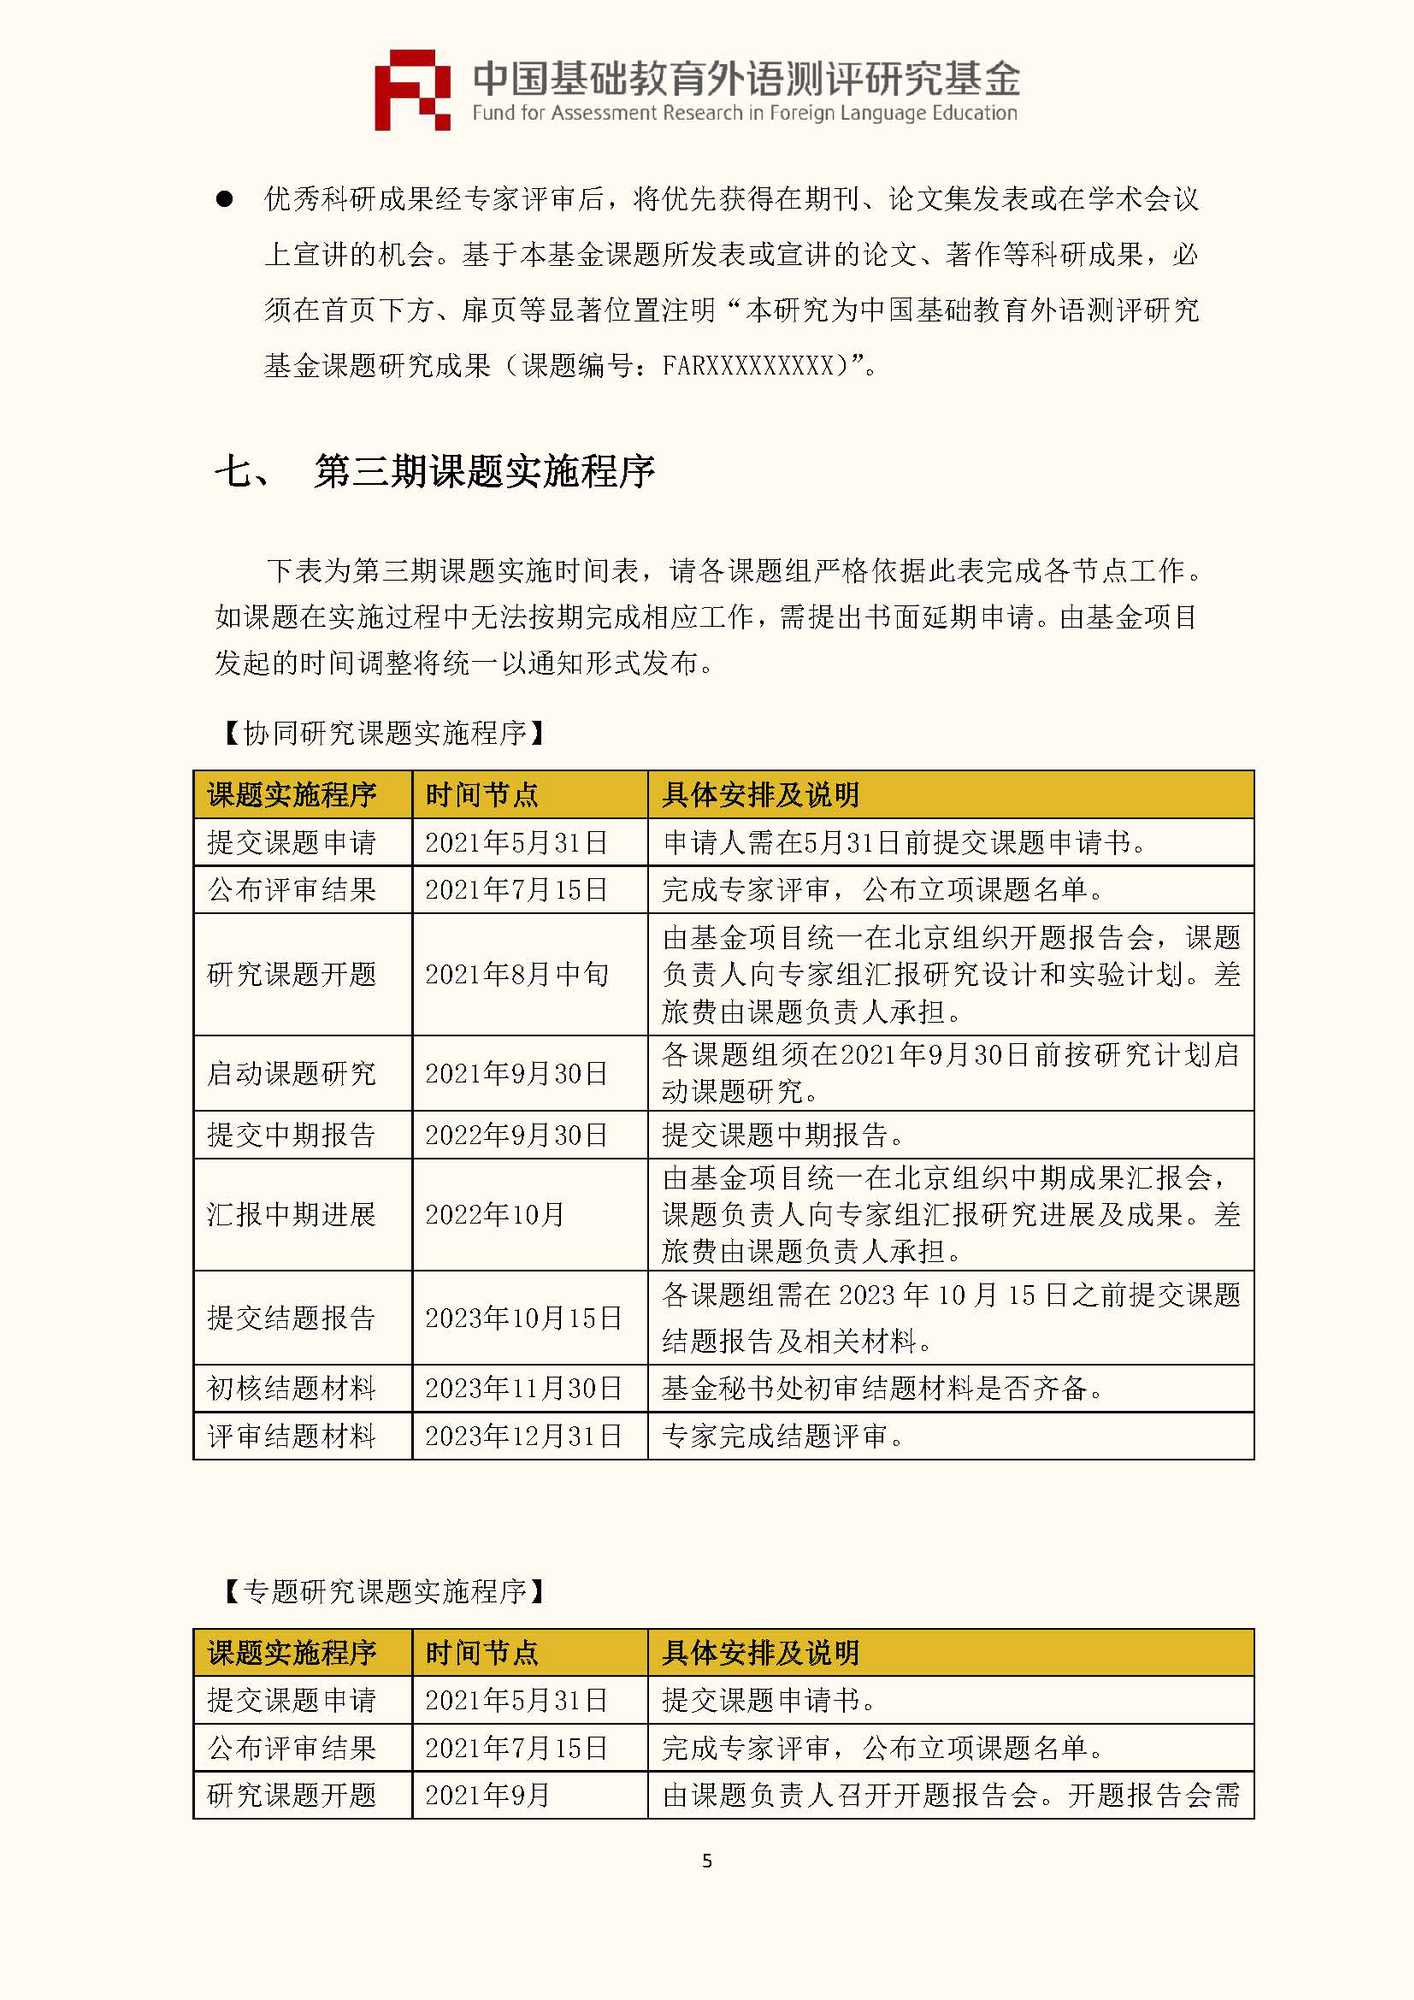 文件1：“中国基础教育外语测评研究基金”第三期课题申报指南_页面_07